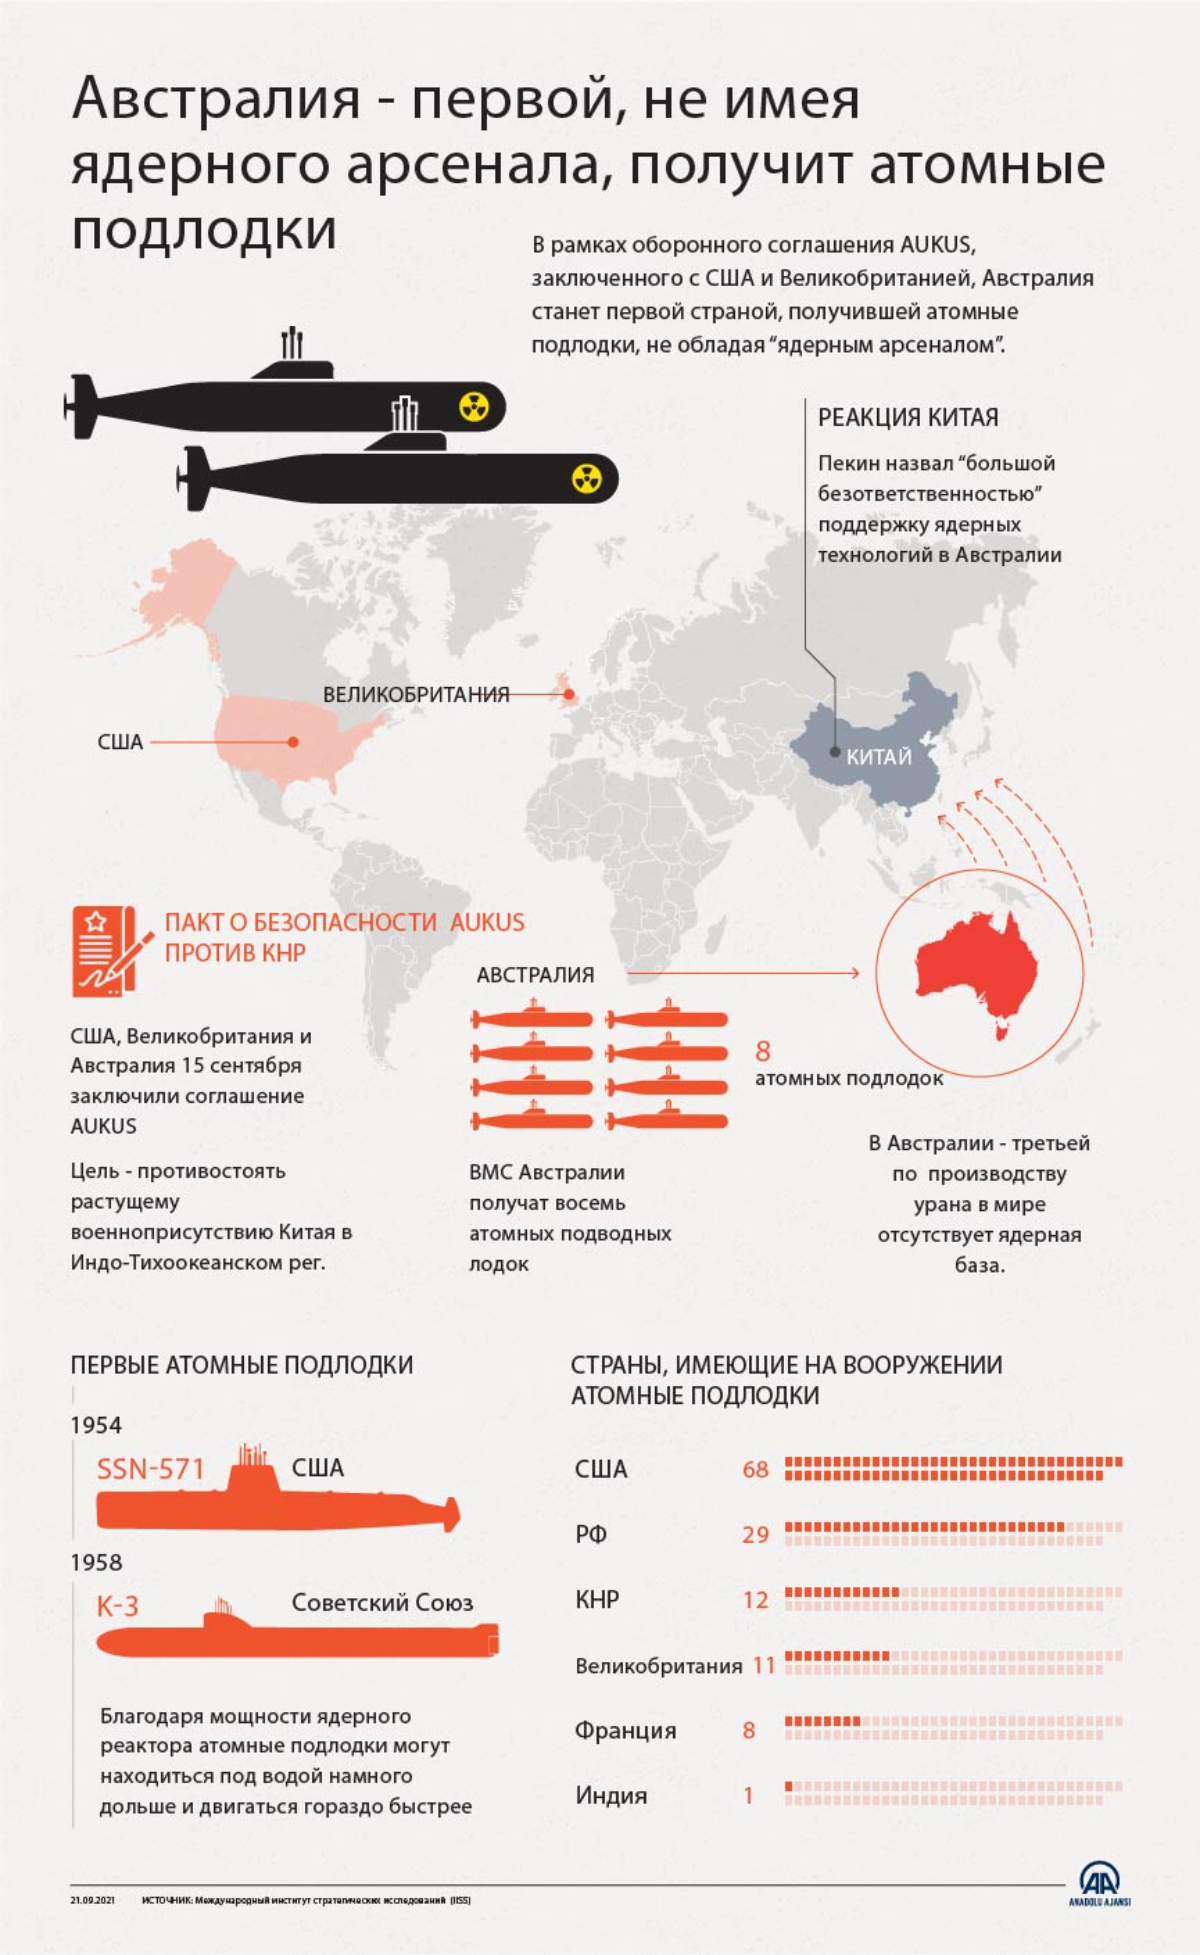 Австралия - первой, не имея ядерного арсенала, получит атомные подлодки